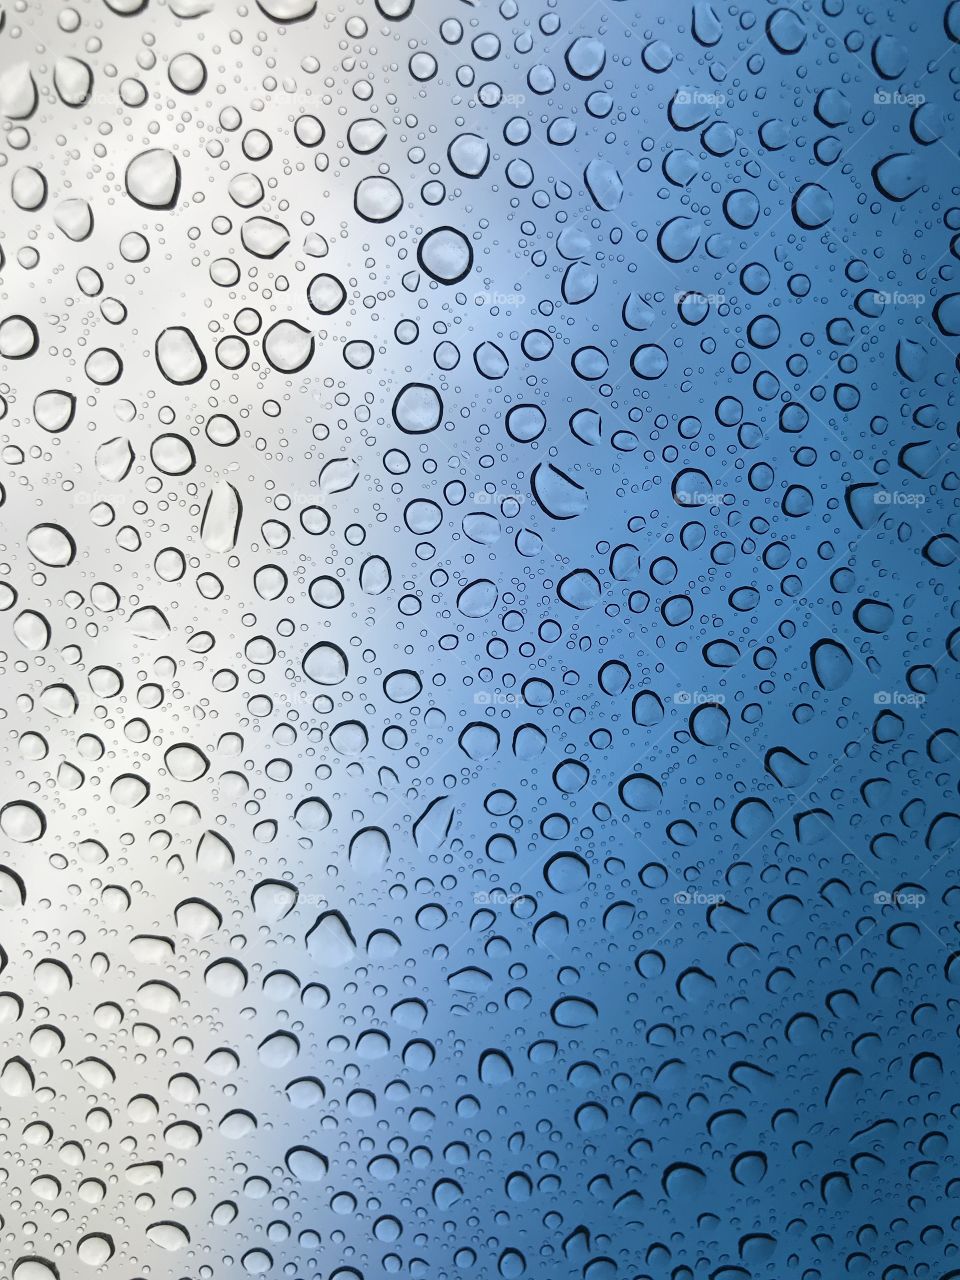 Silver and blue rain drops